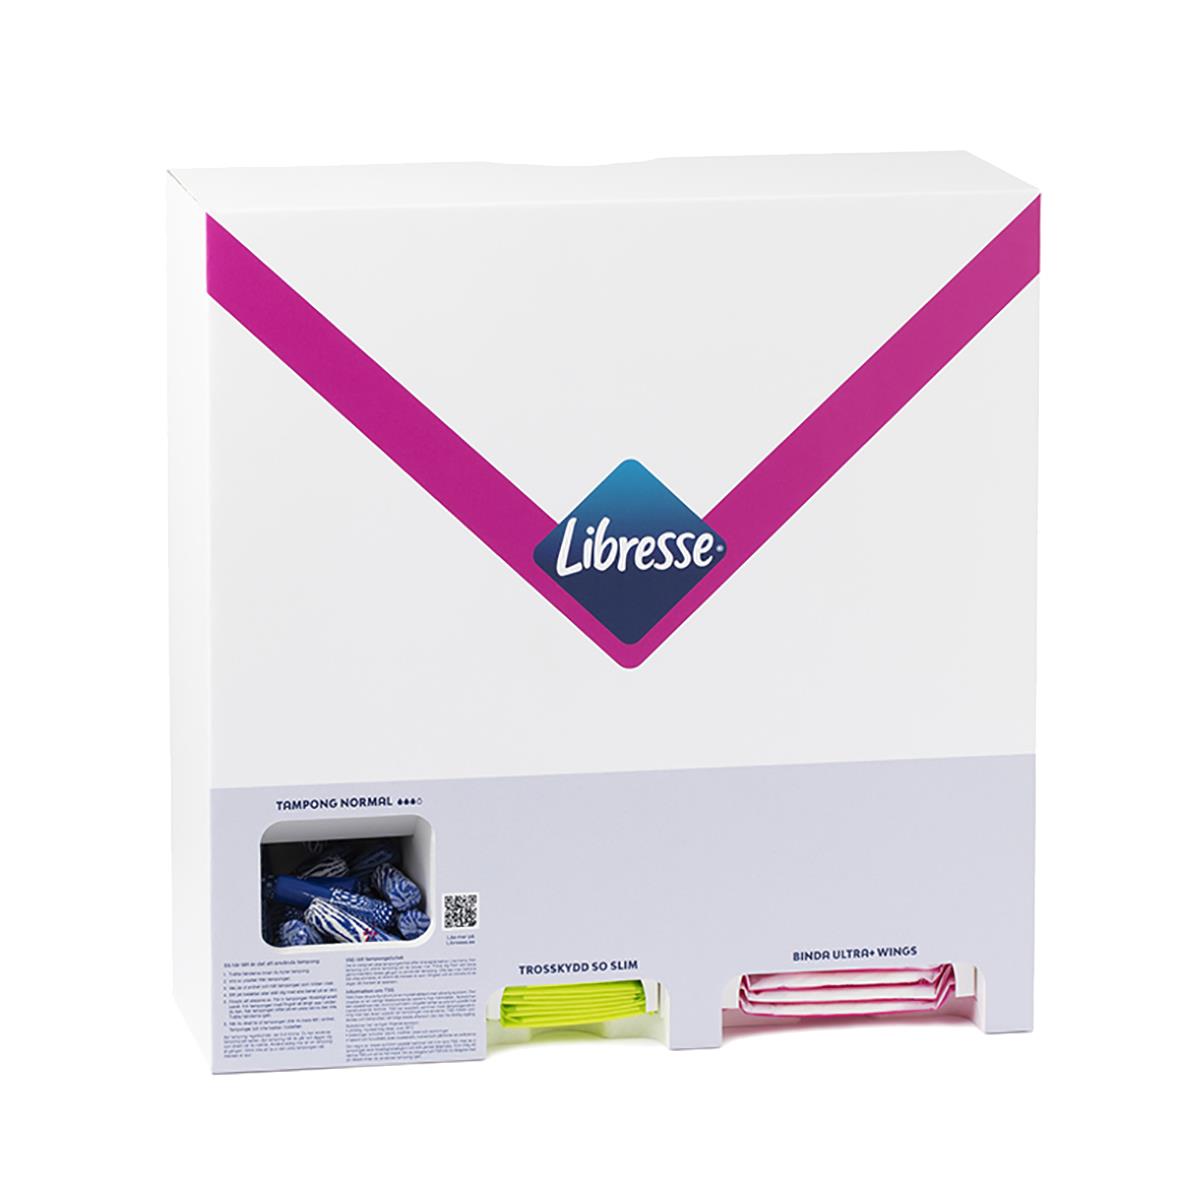 Startpaket Libresse Inkl Dispenser 51020989_3